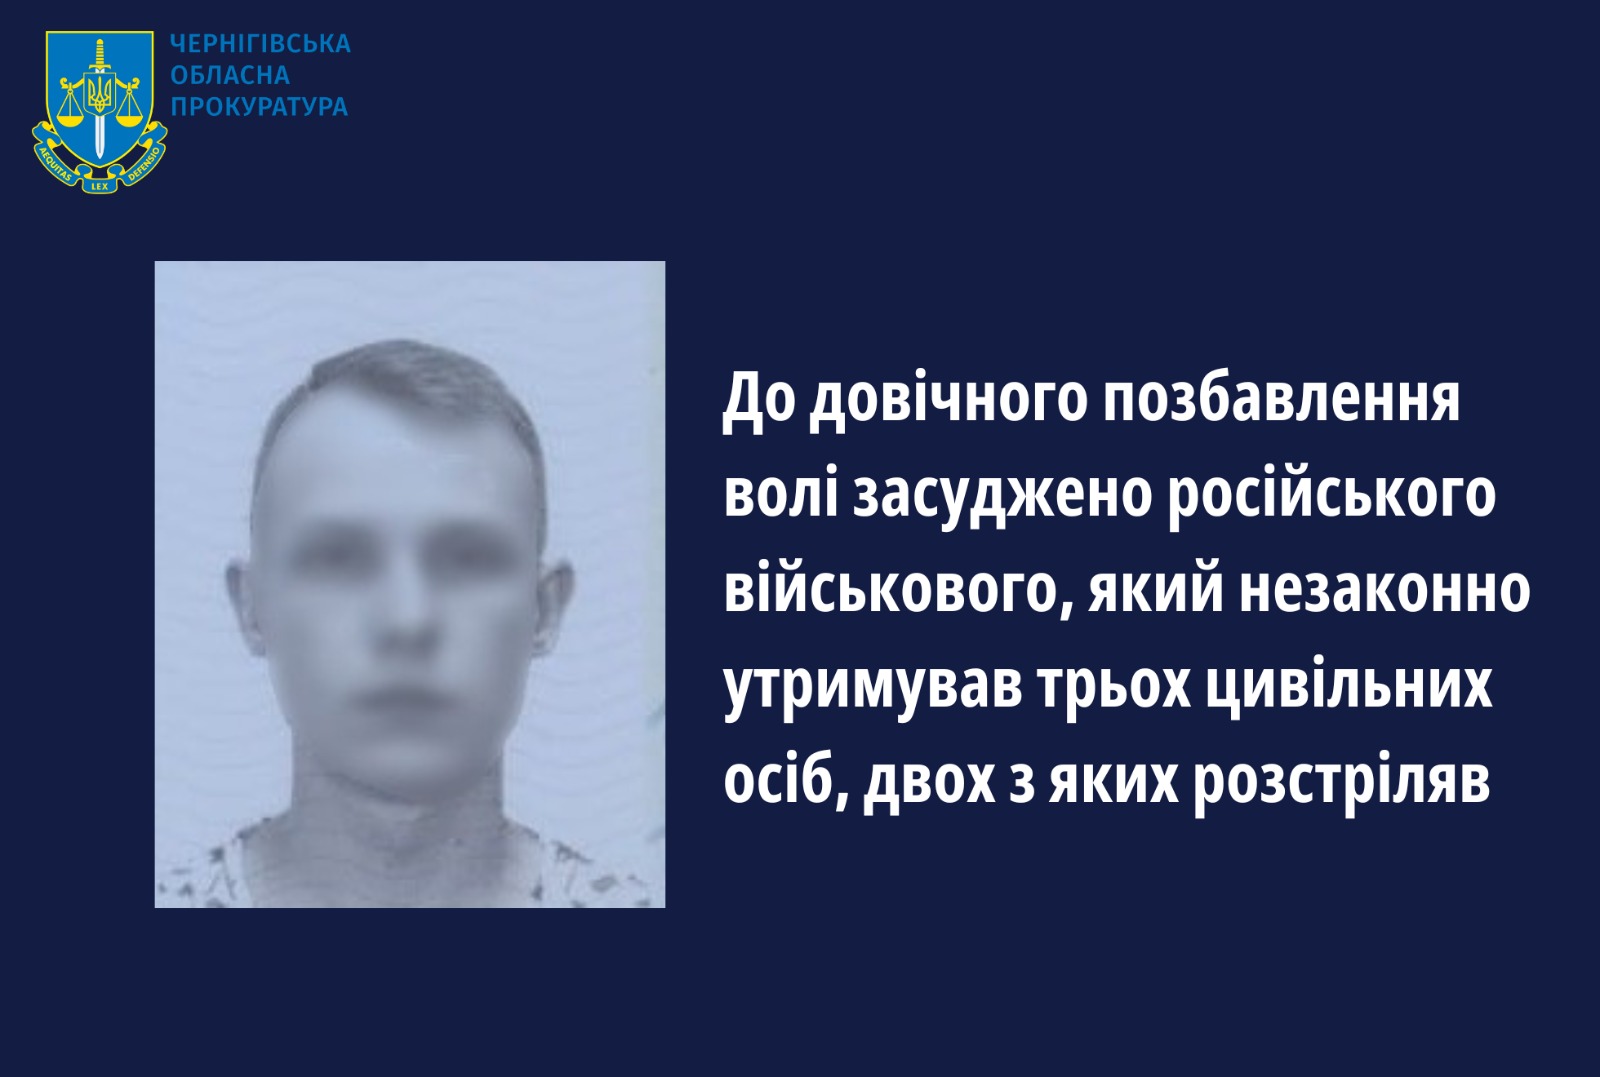 Незаконно утримував трьох цивільних, двох з яких розстріляв, – до довічного позбавлення волі засуджено російського військового